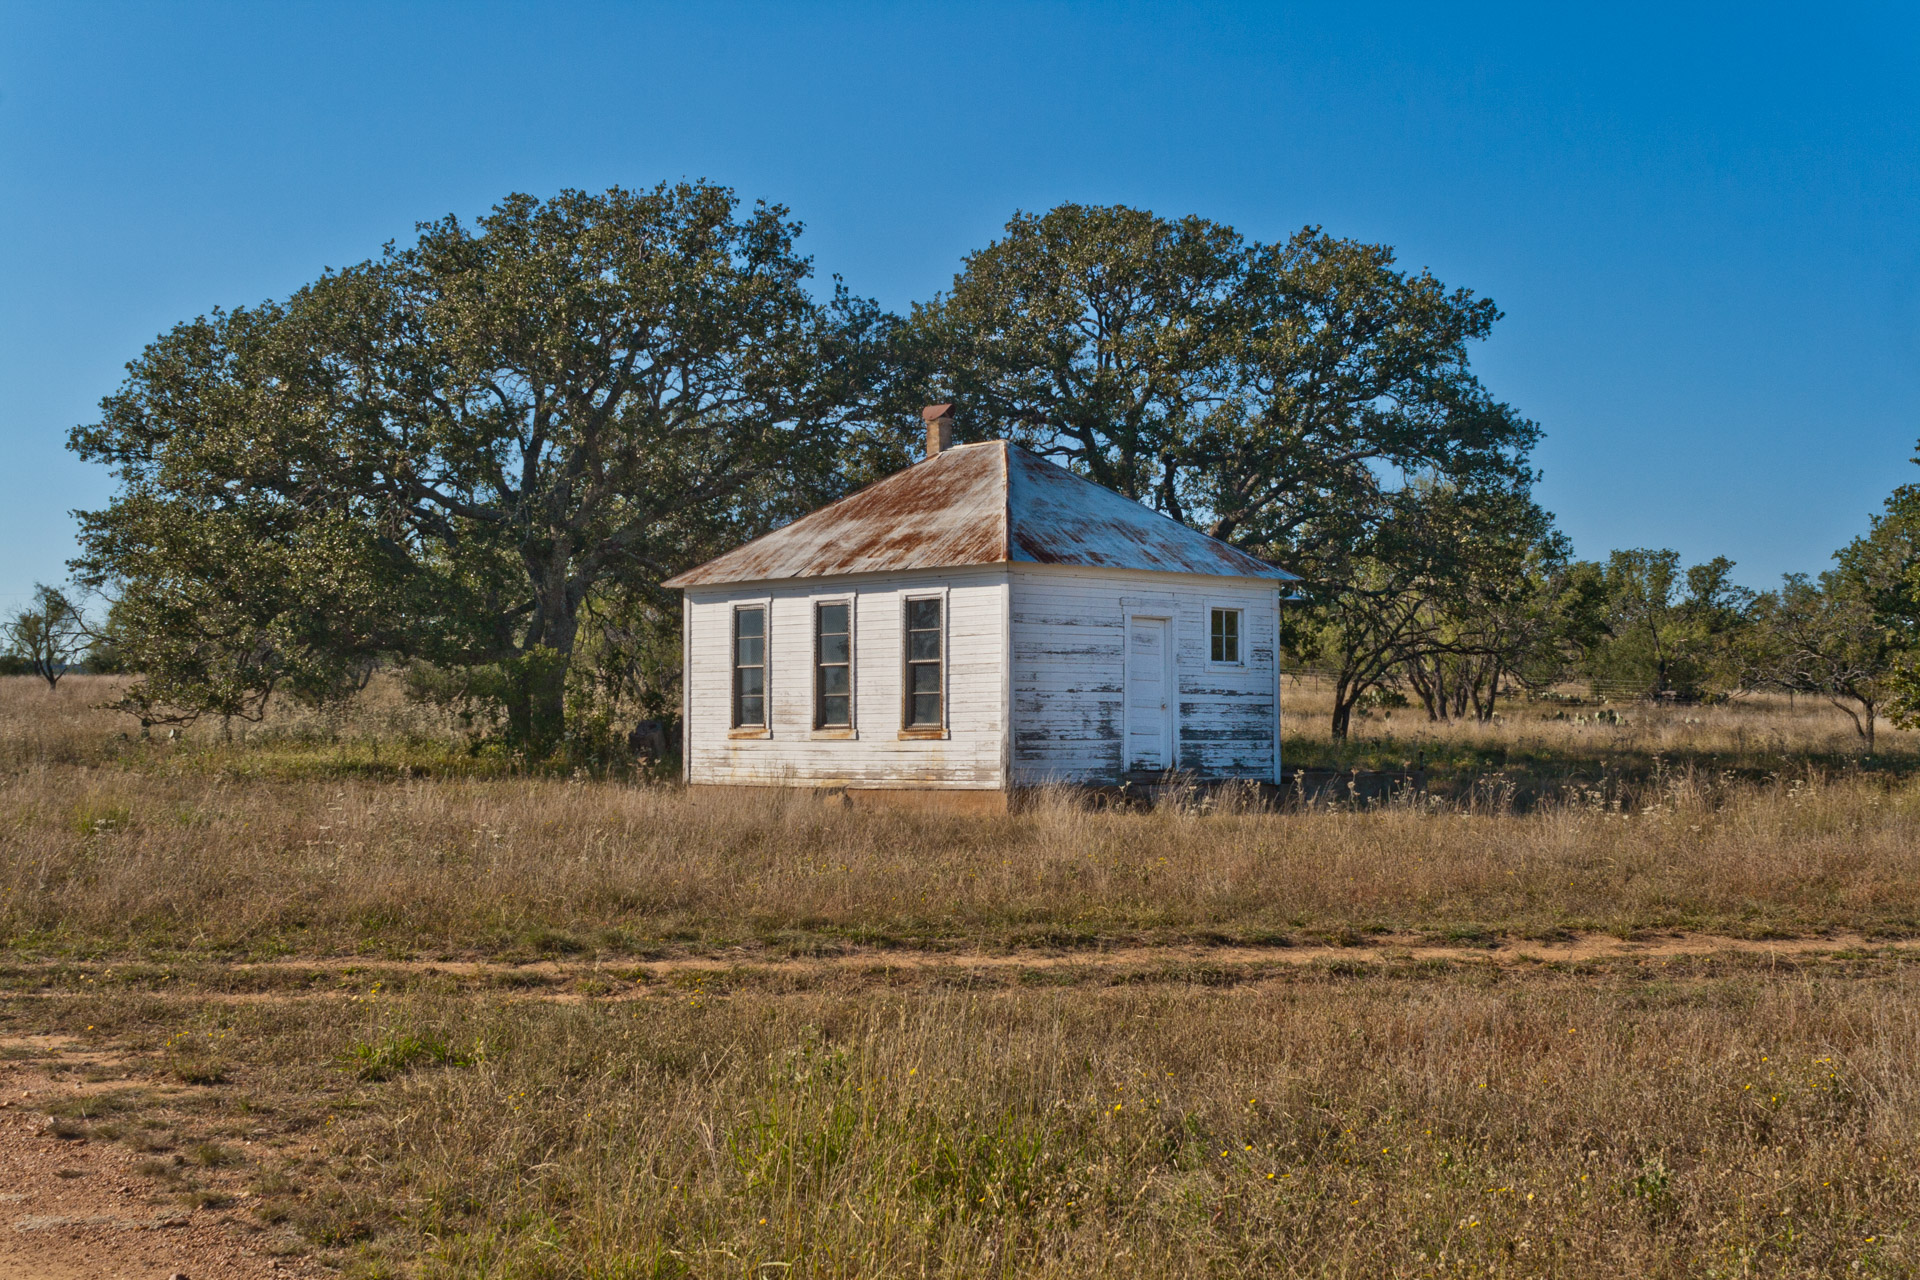 Fly Gap, Texas - The One-Room Schoolhouse (side far)